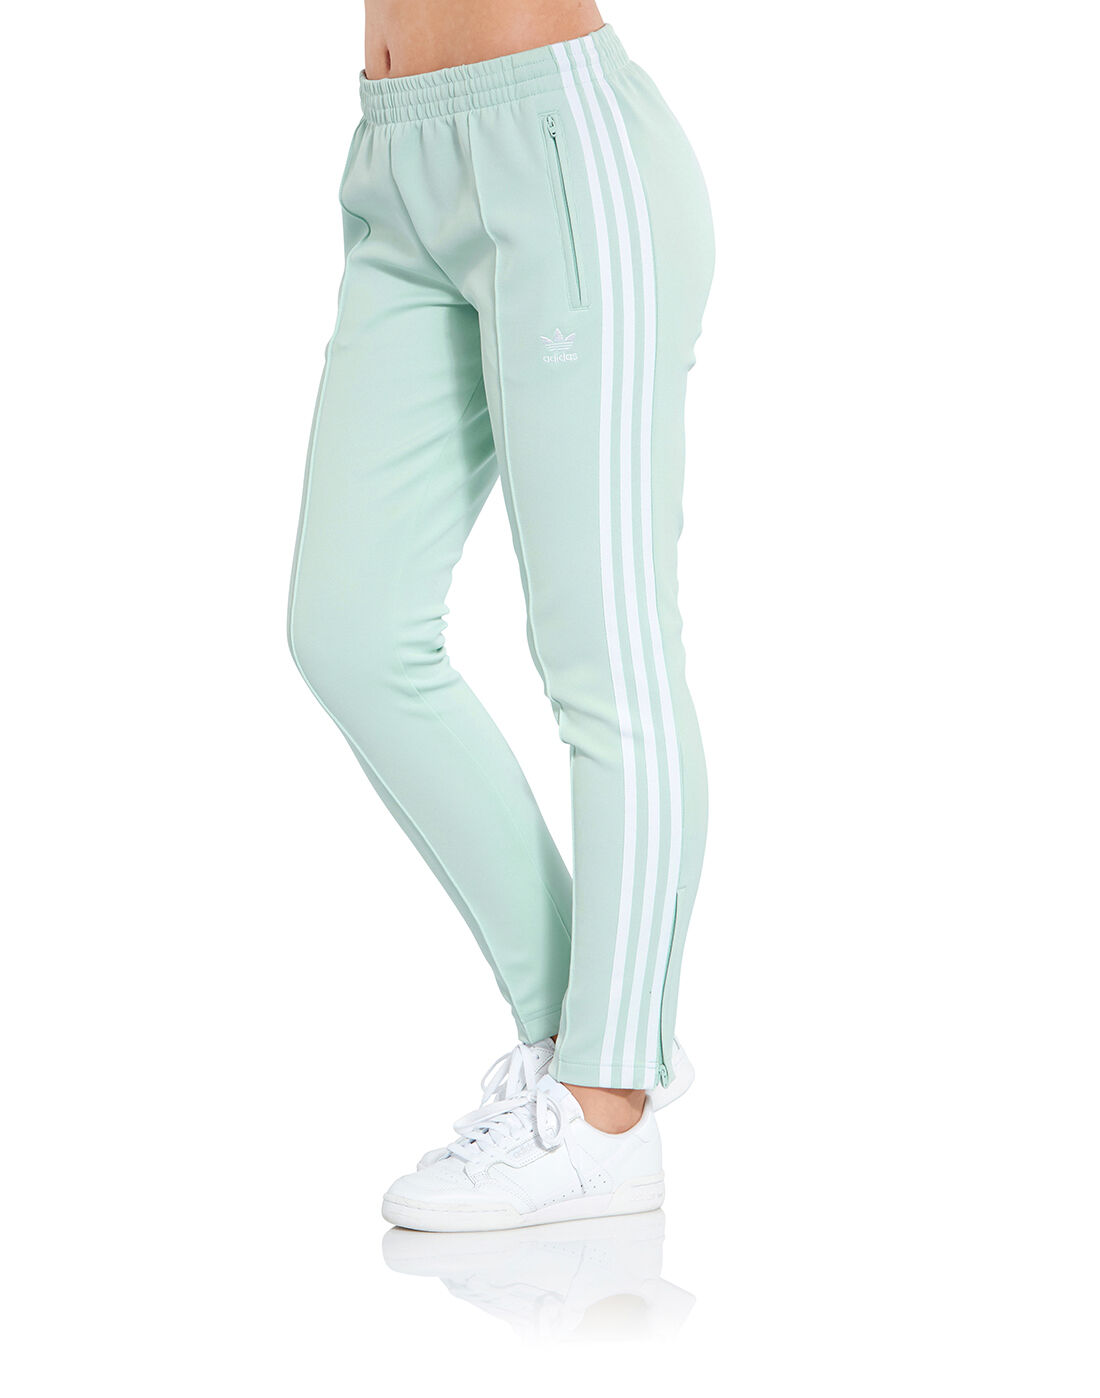 Mens Adidas Originals Pants | Adidas Originals Firebird Track Pants Green/ Green | Champs Sports « PT MITRASUKSES